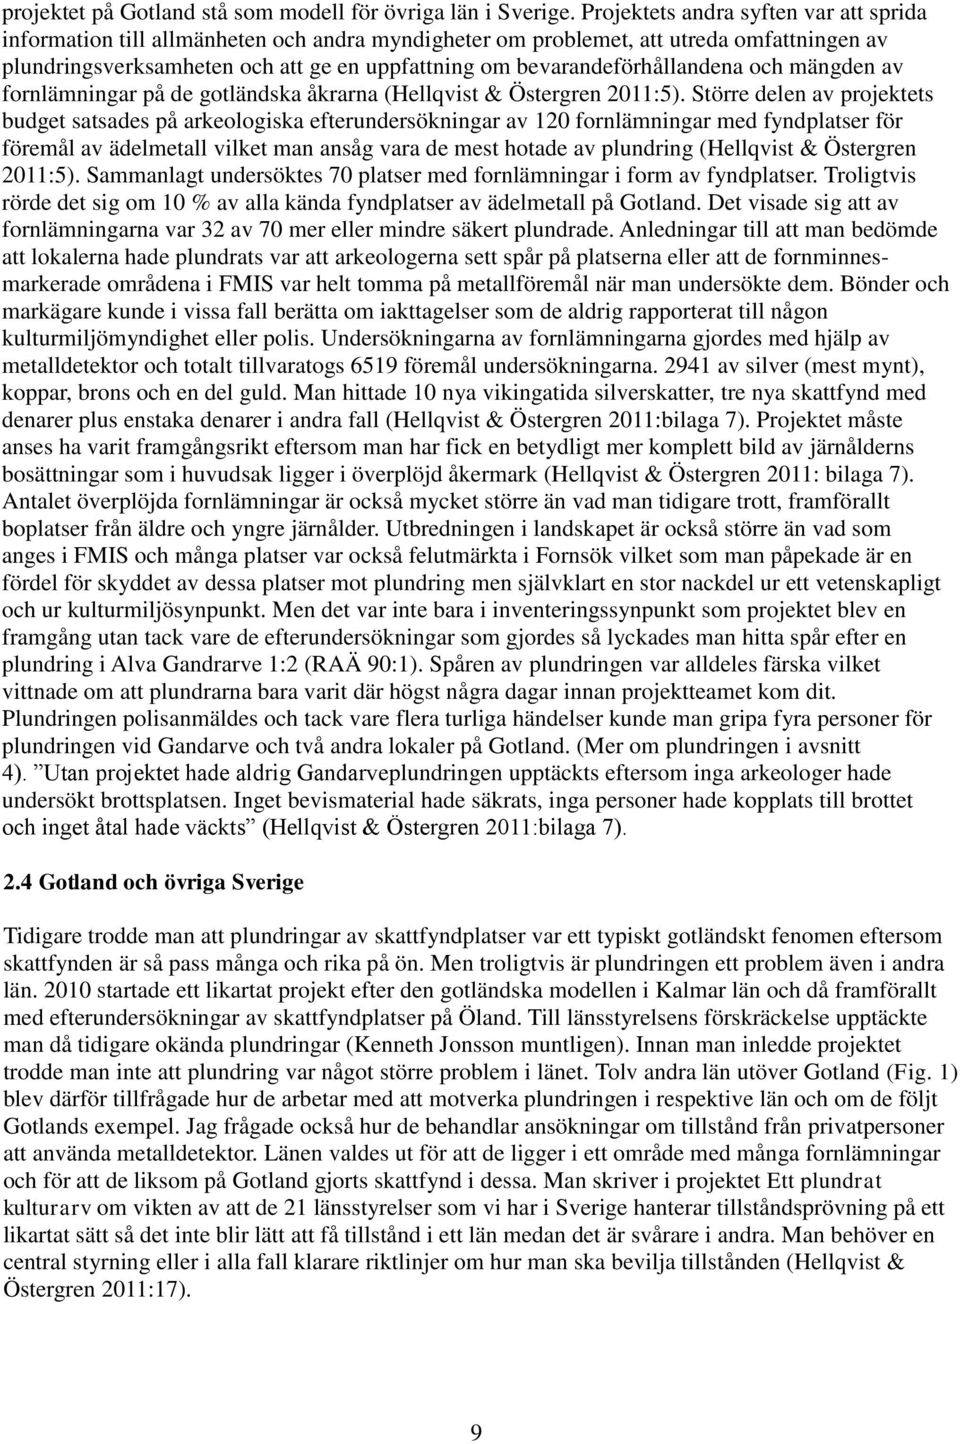 bevarandeförhållandena och mängden av fornlämningar på de gotländska åkrarna (Hellqvist & Östergren 2011:5).